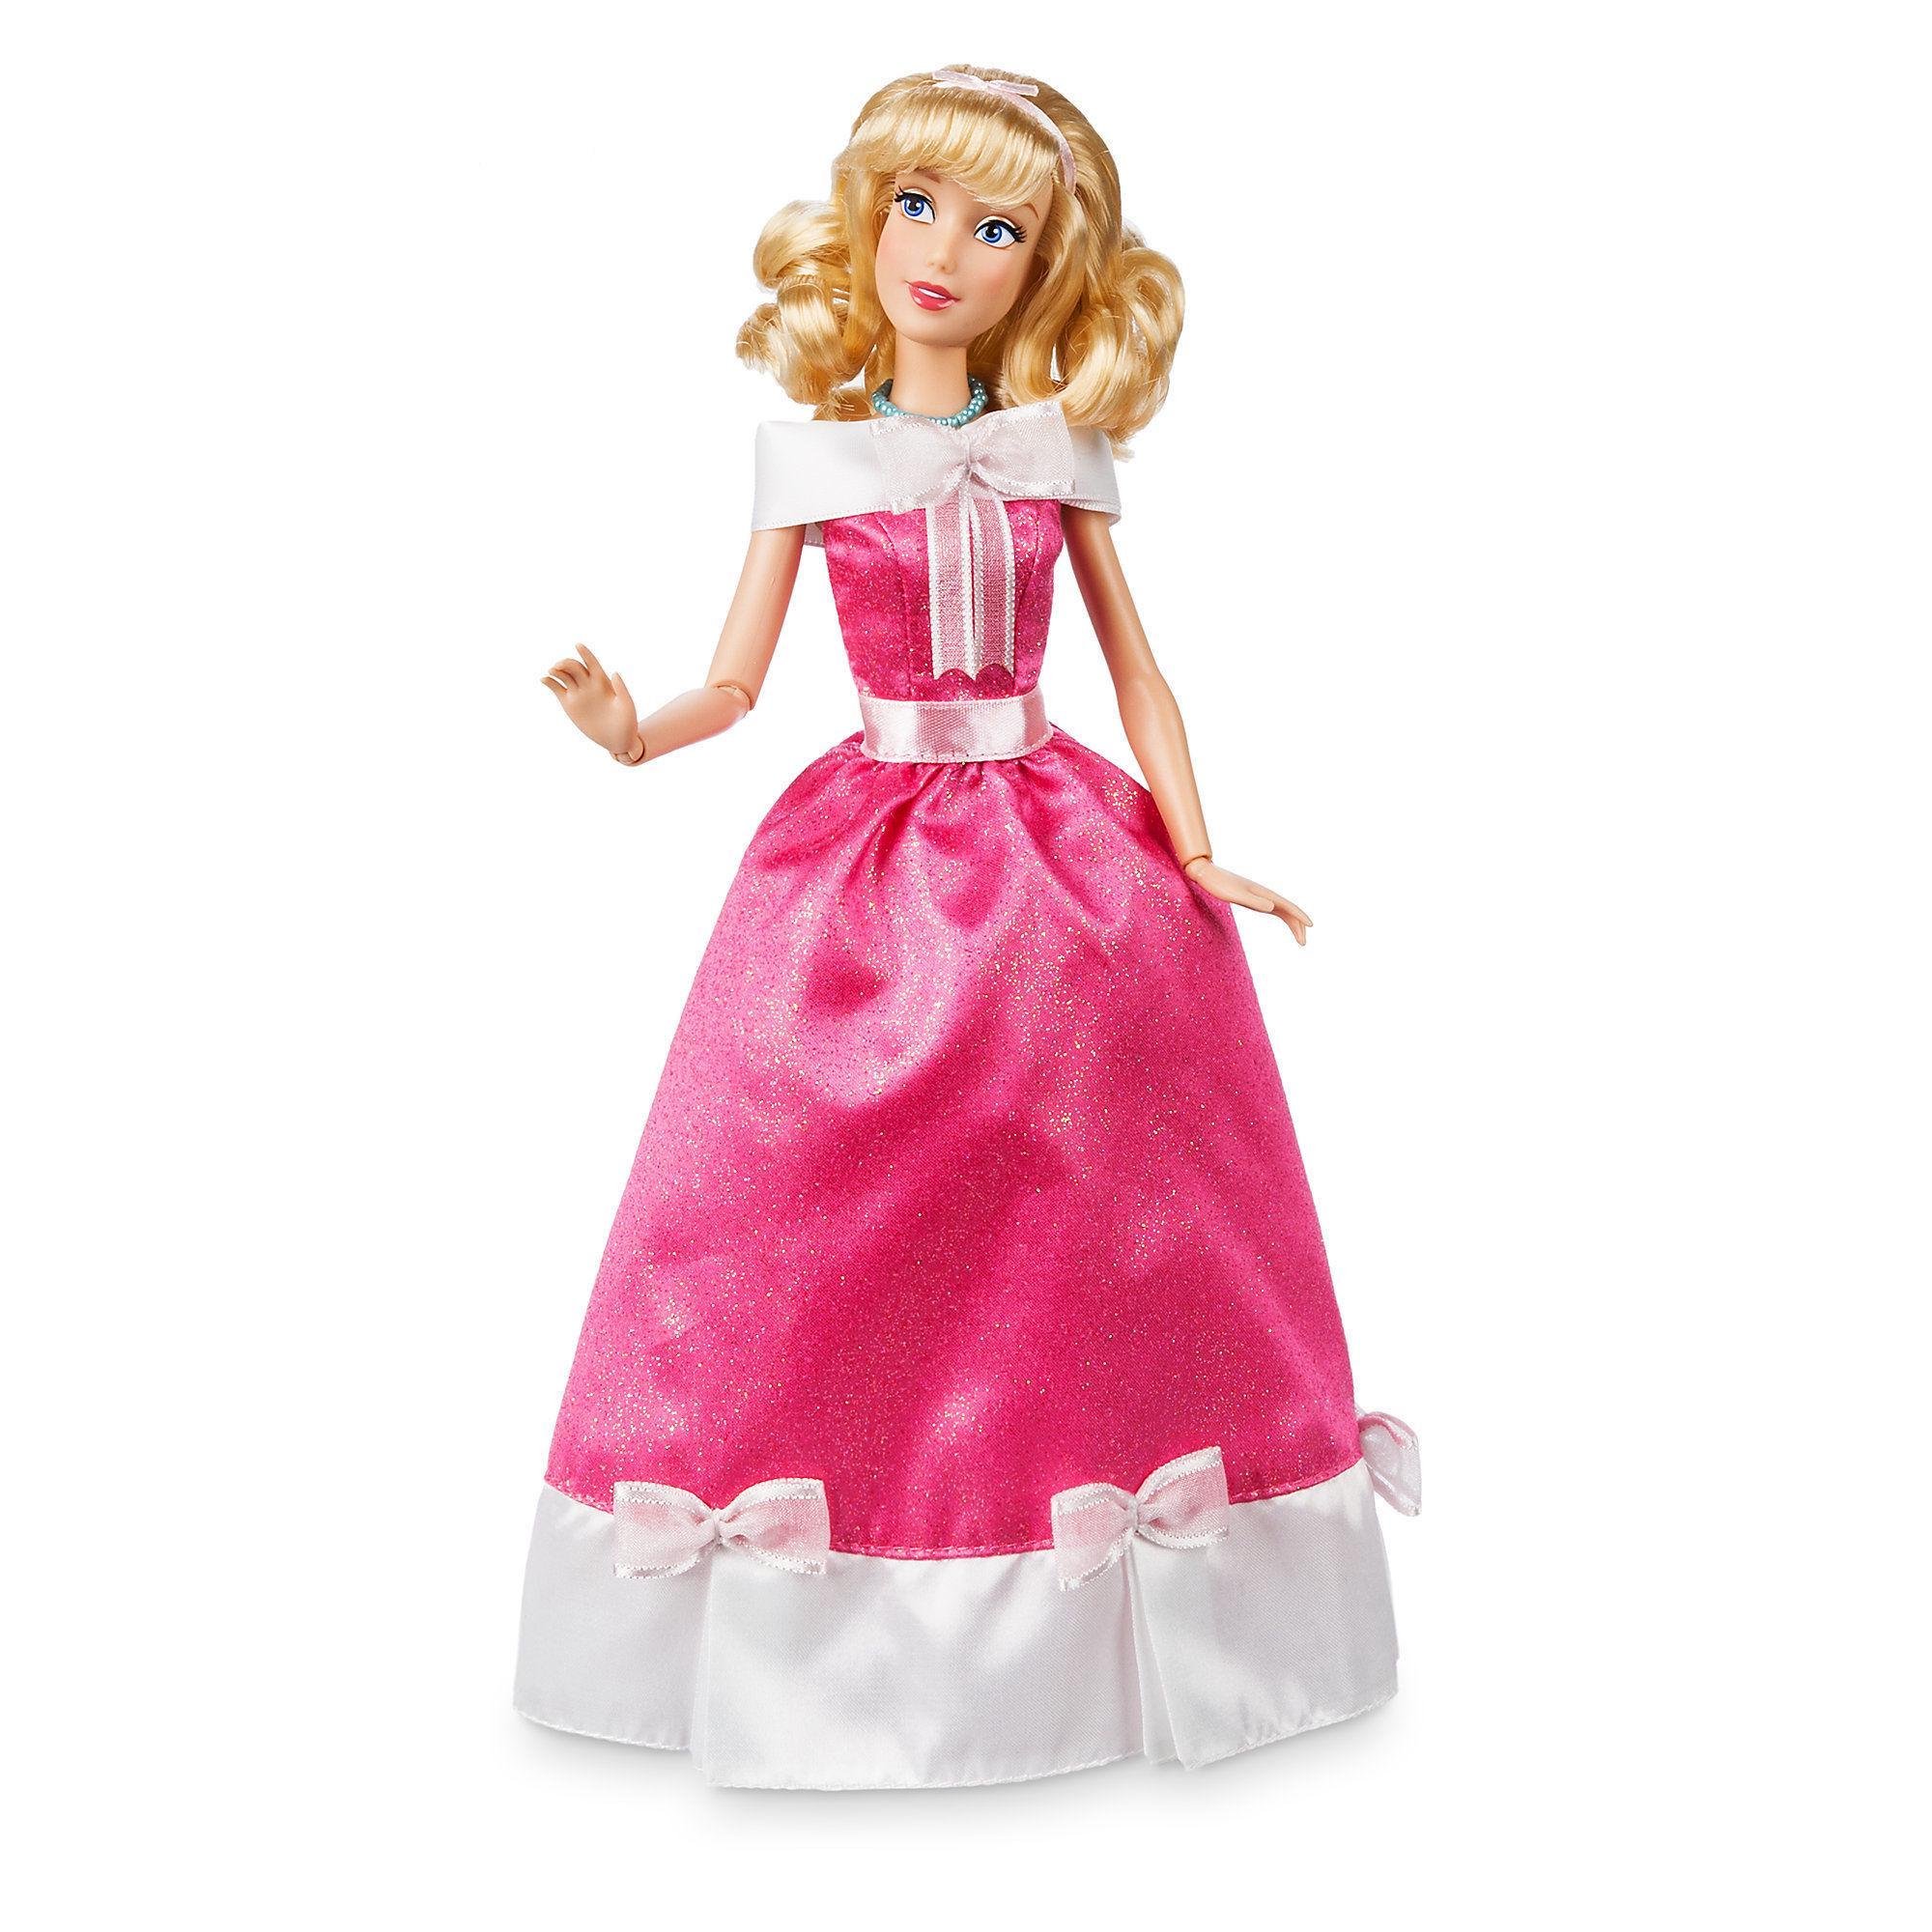 Dolls sing. Кукла принцесса Дисней Золушка. Кукла Золушка Дисней стор. Кукла Дисней Золушка оригинал. Кукла Hasbro Disney Princess Королевский блеск Ариэль, 26.5 см, e4156.